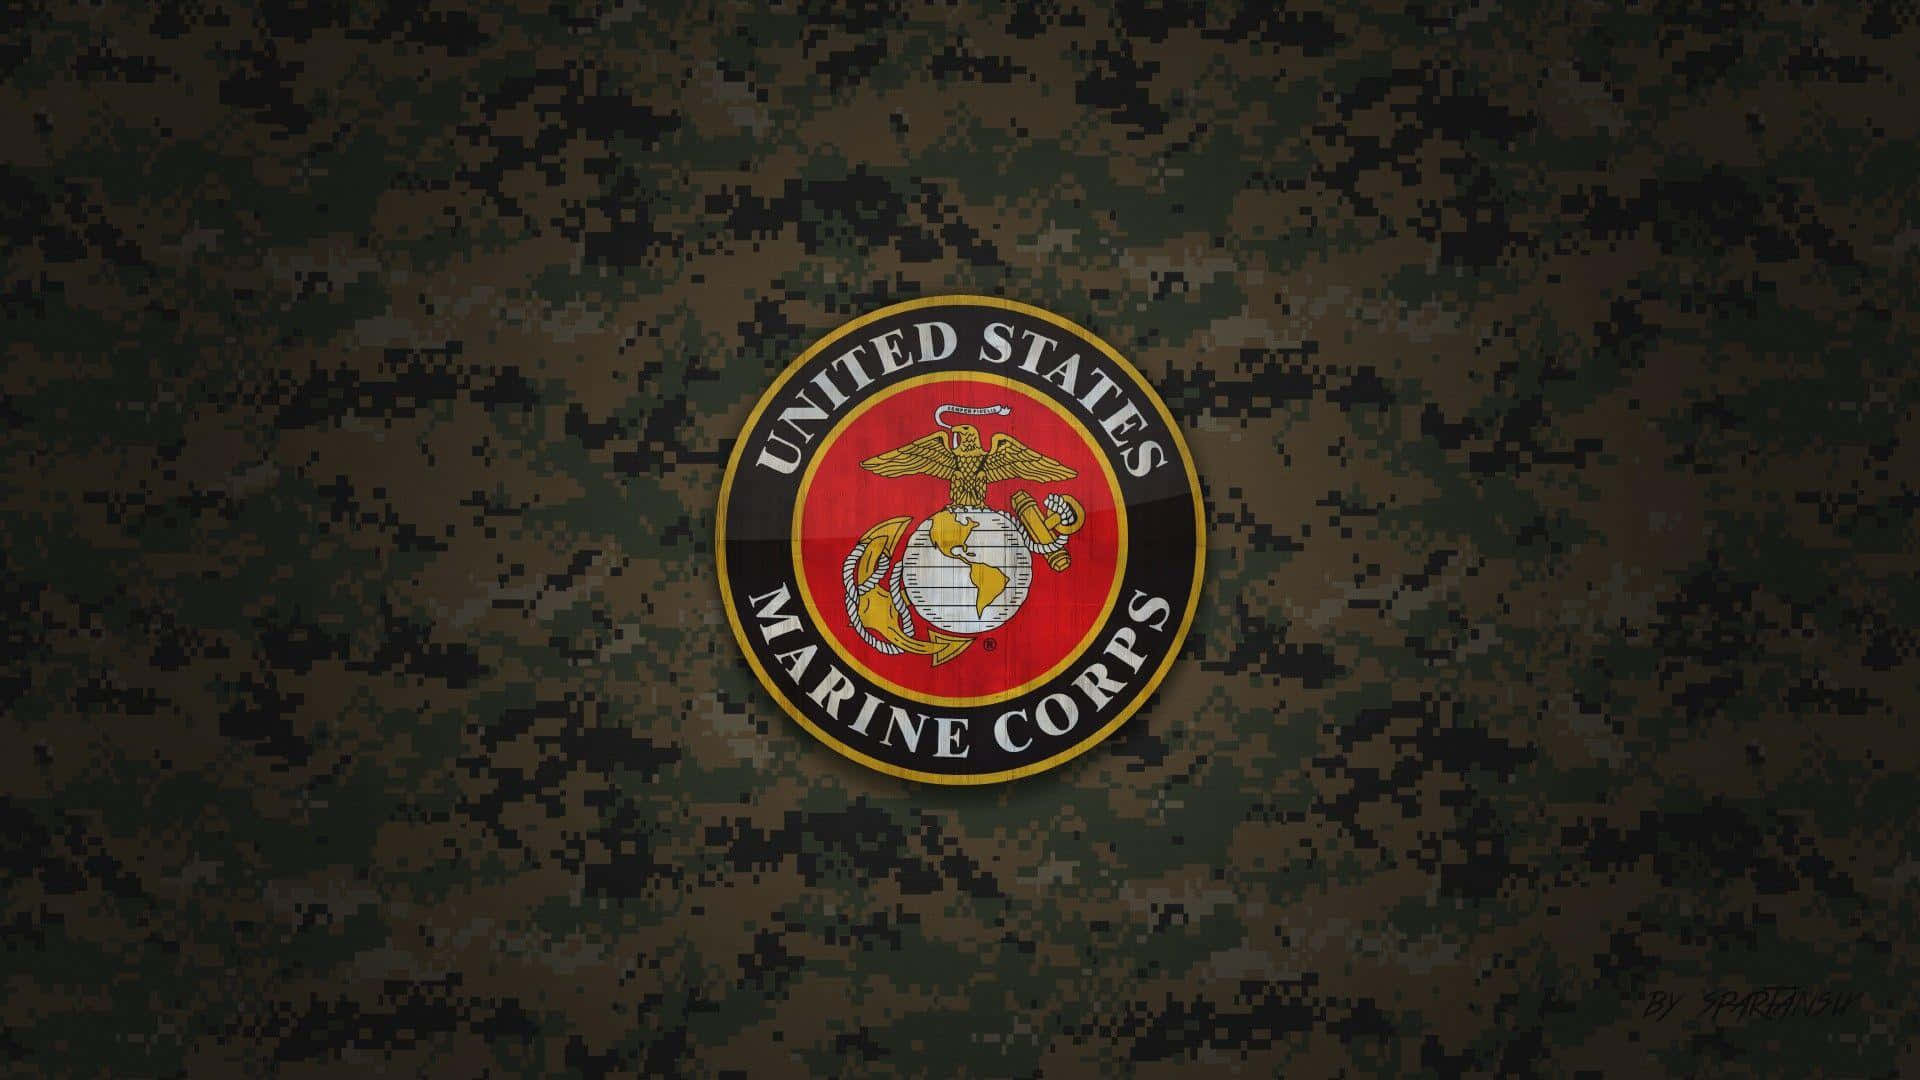 Logotipodel Cuerpo De Marines De Los Estados Unidos (usmc) Fondo de pantalla